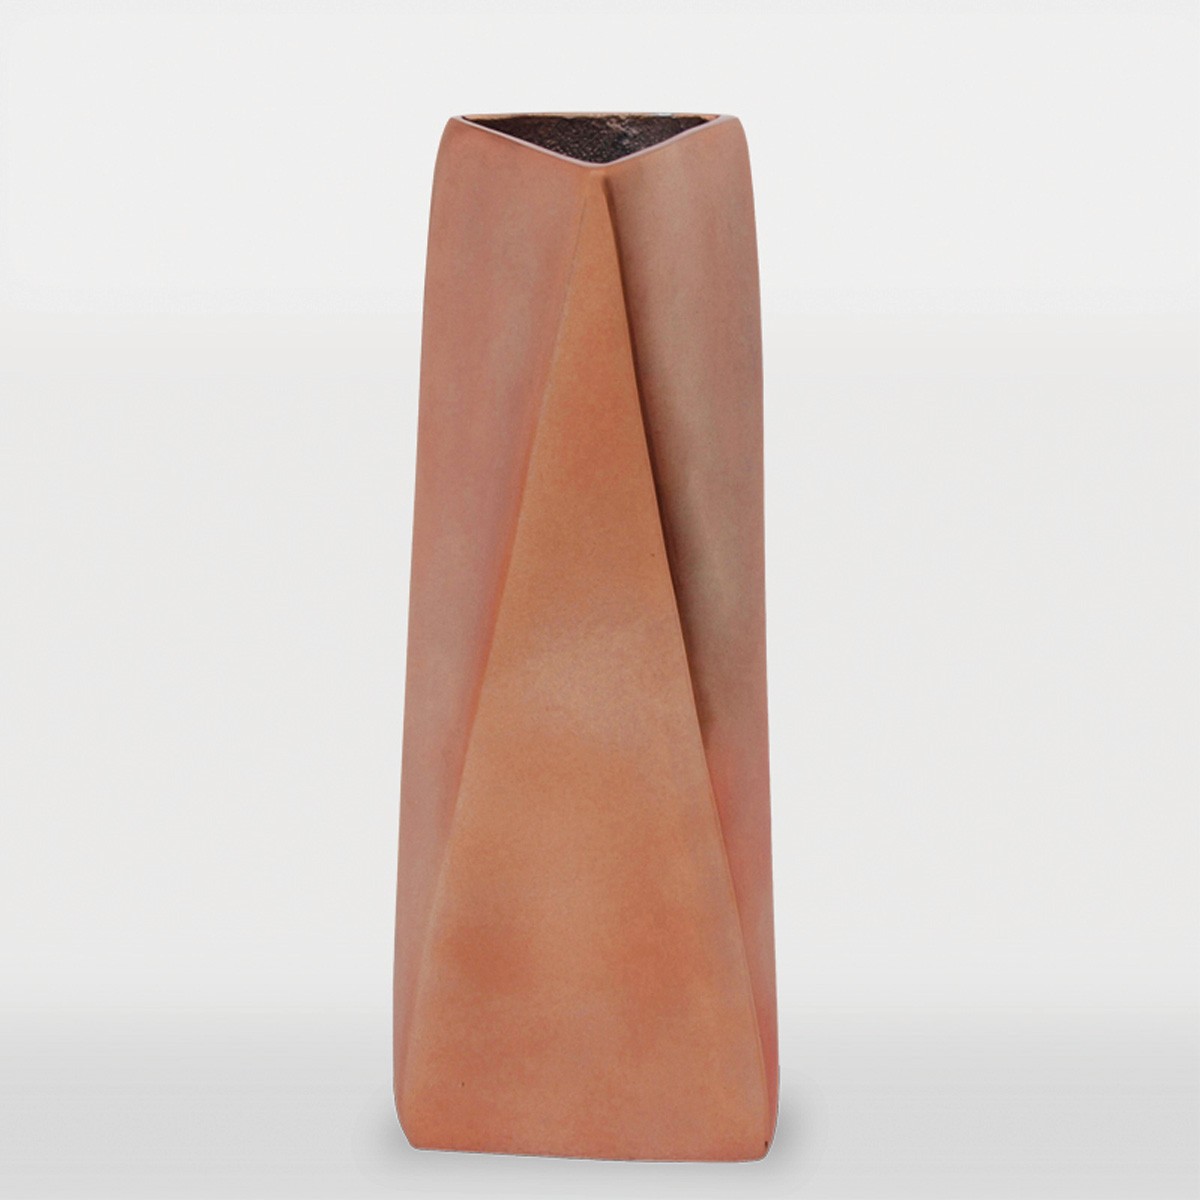 Ren-Wil Nobel Vase II - Copper